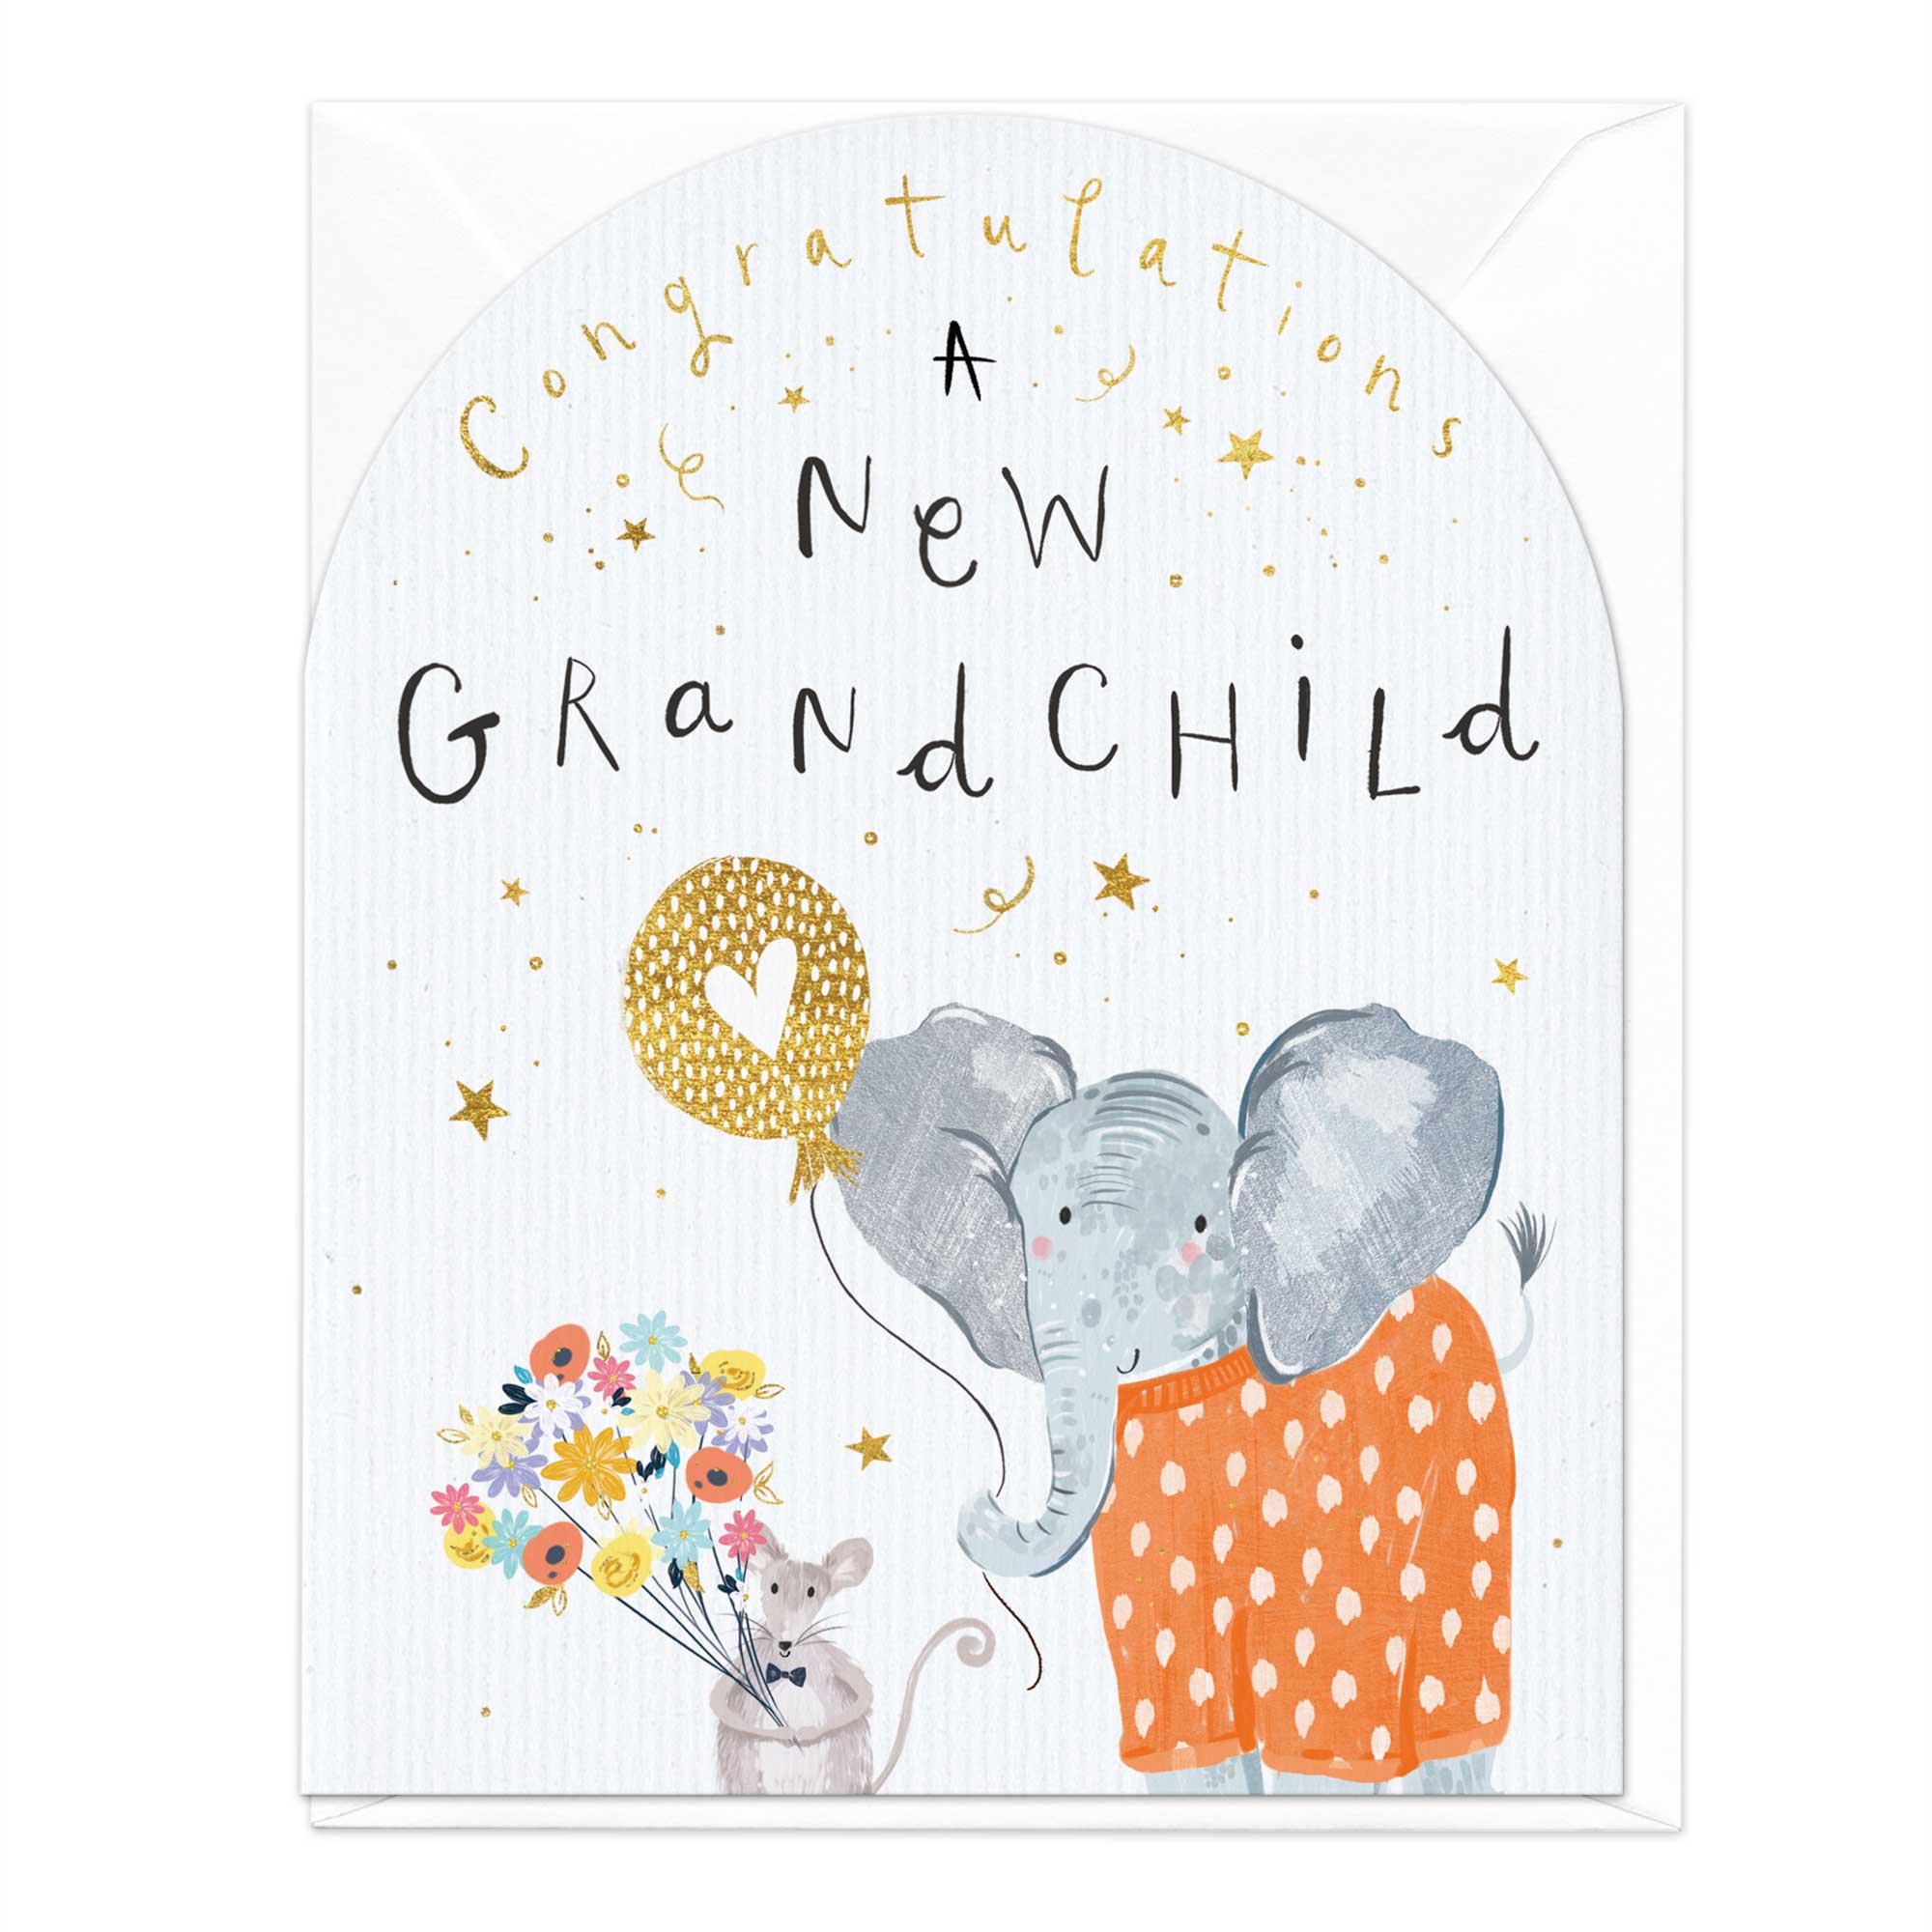 Grandchild Congratulations Arch Card